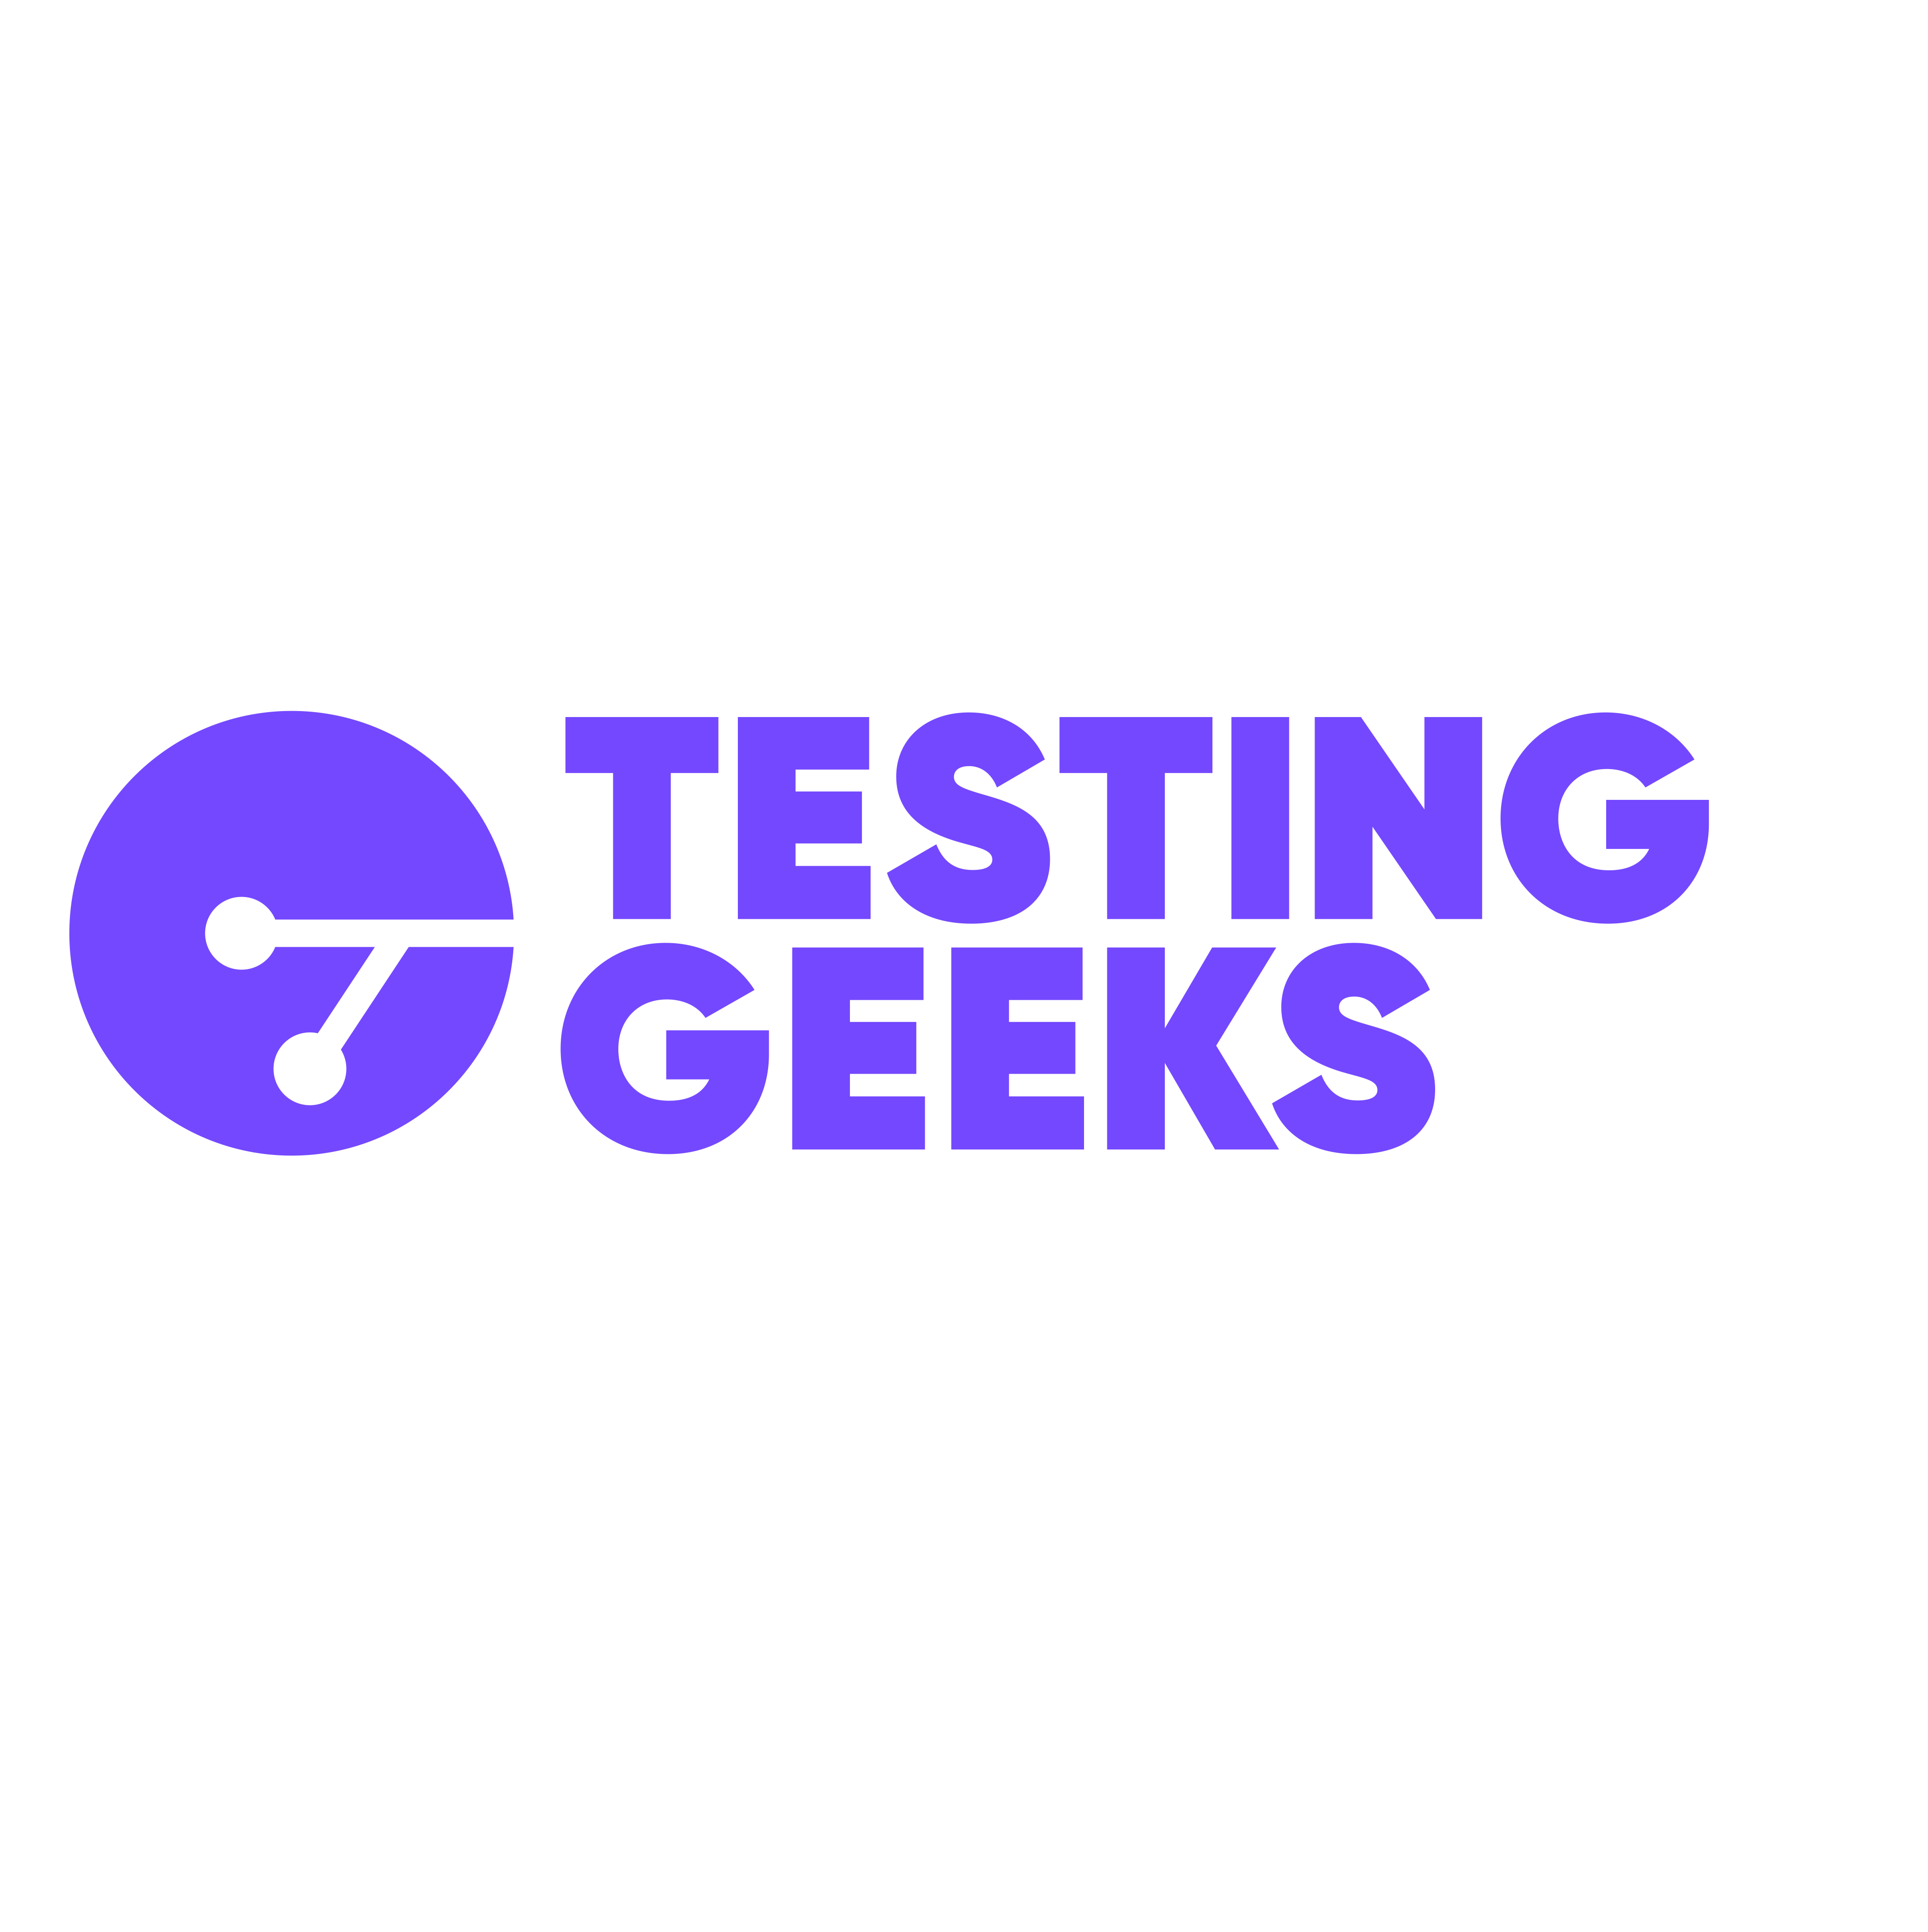 Testing Geeks